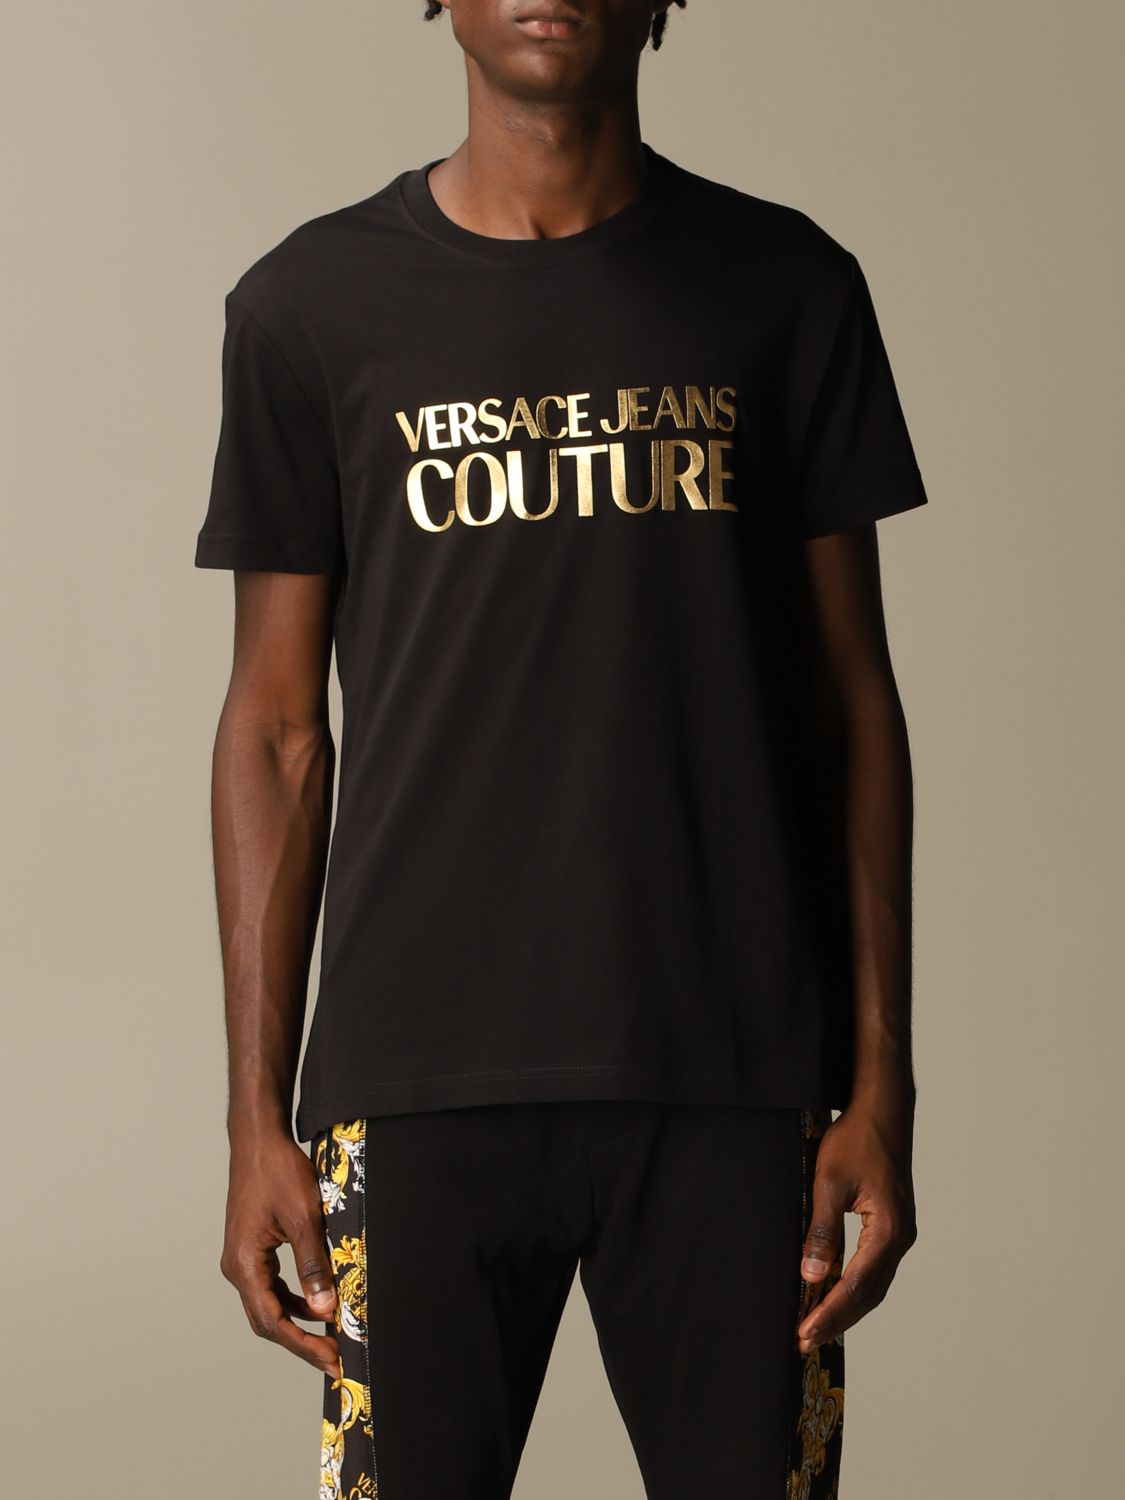 VERSACE JEANS COUTURE, Black Men's T-shirt